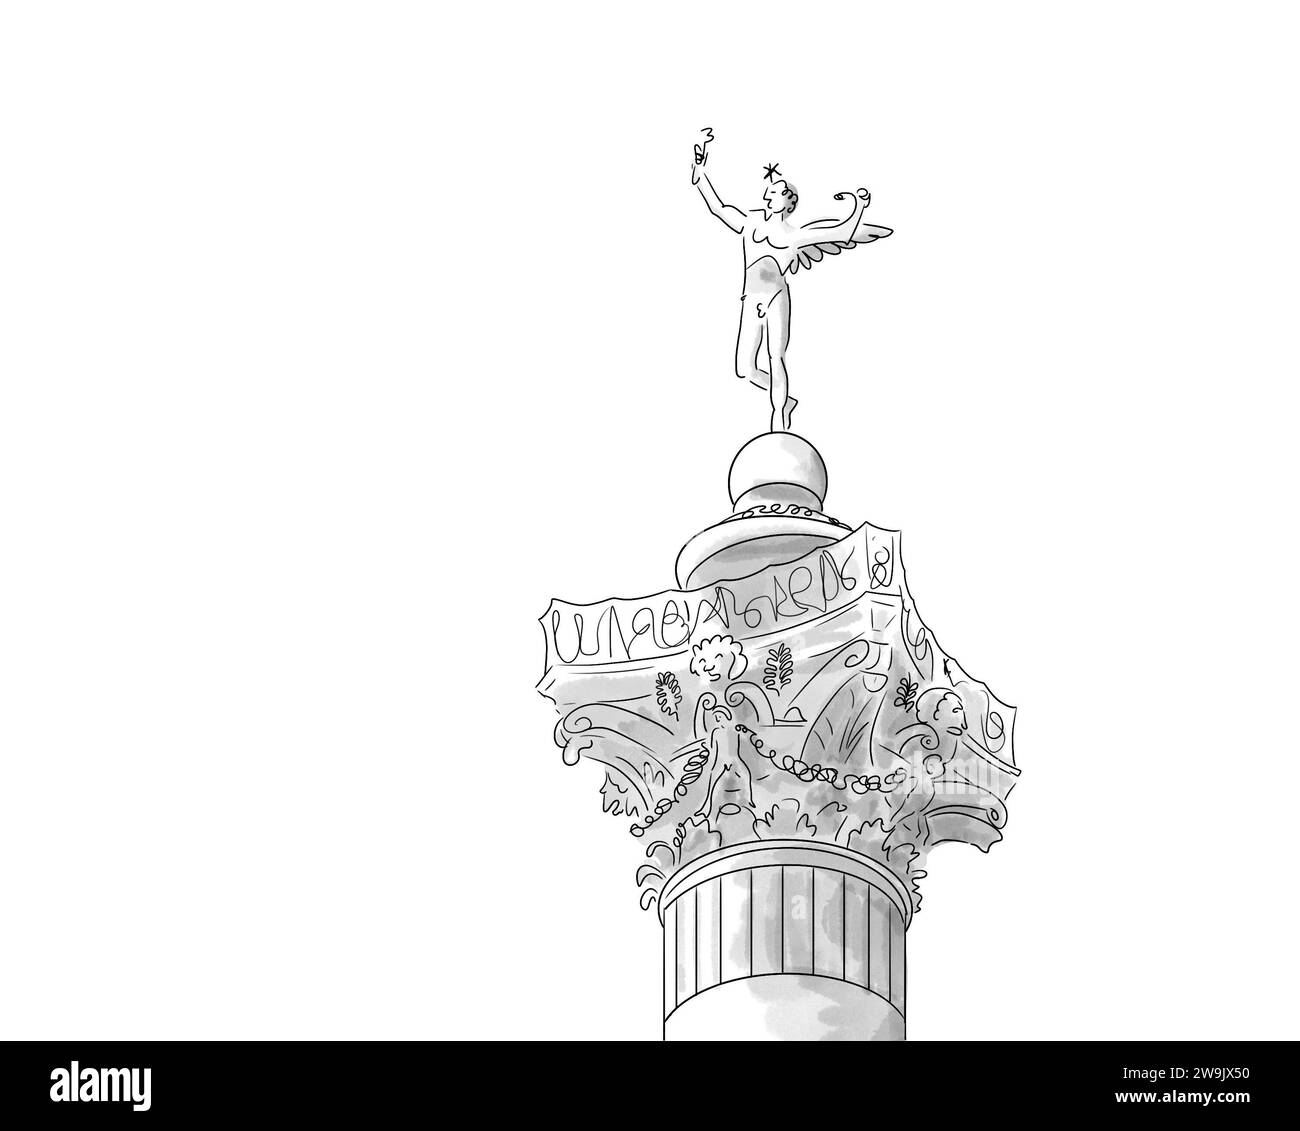 Illustrazione en noir et blanc de Monument de Paris, Bastille colonne de Juillet Foto Stock